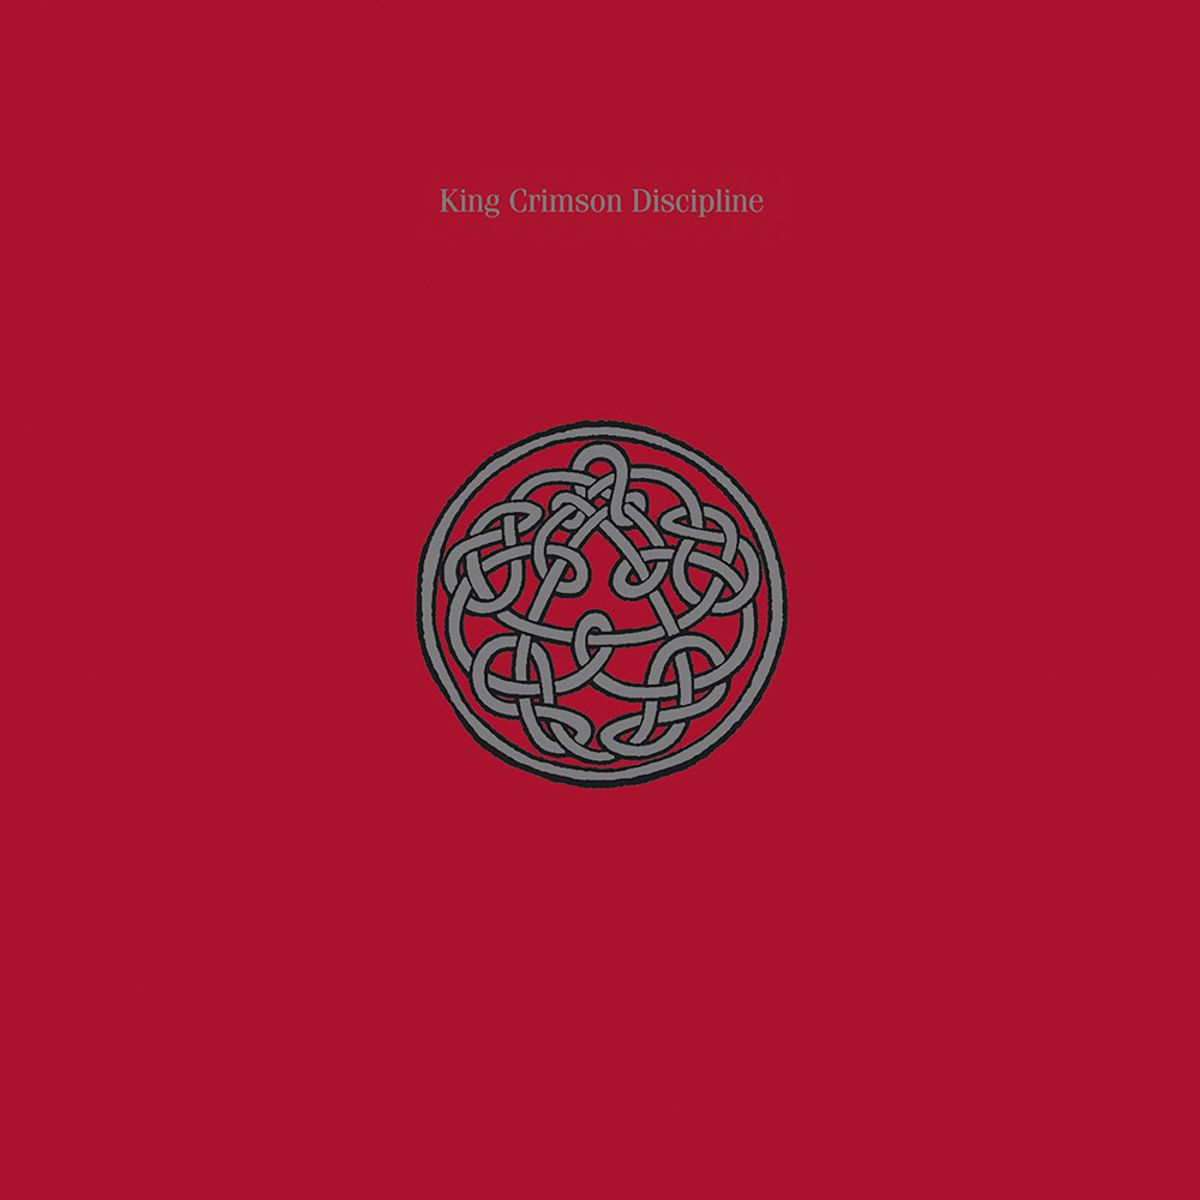 #AdrianBelew - King Crimson - Indiscipline (1981)